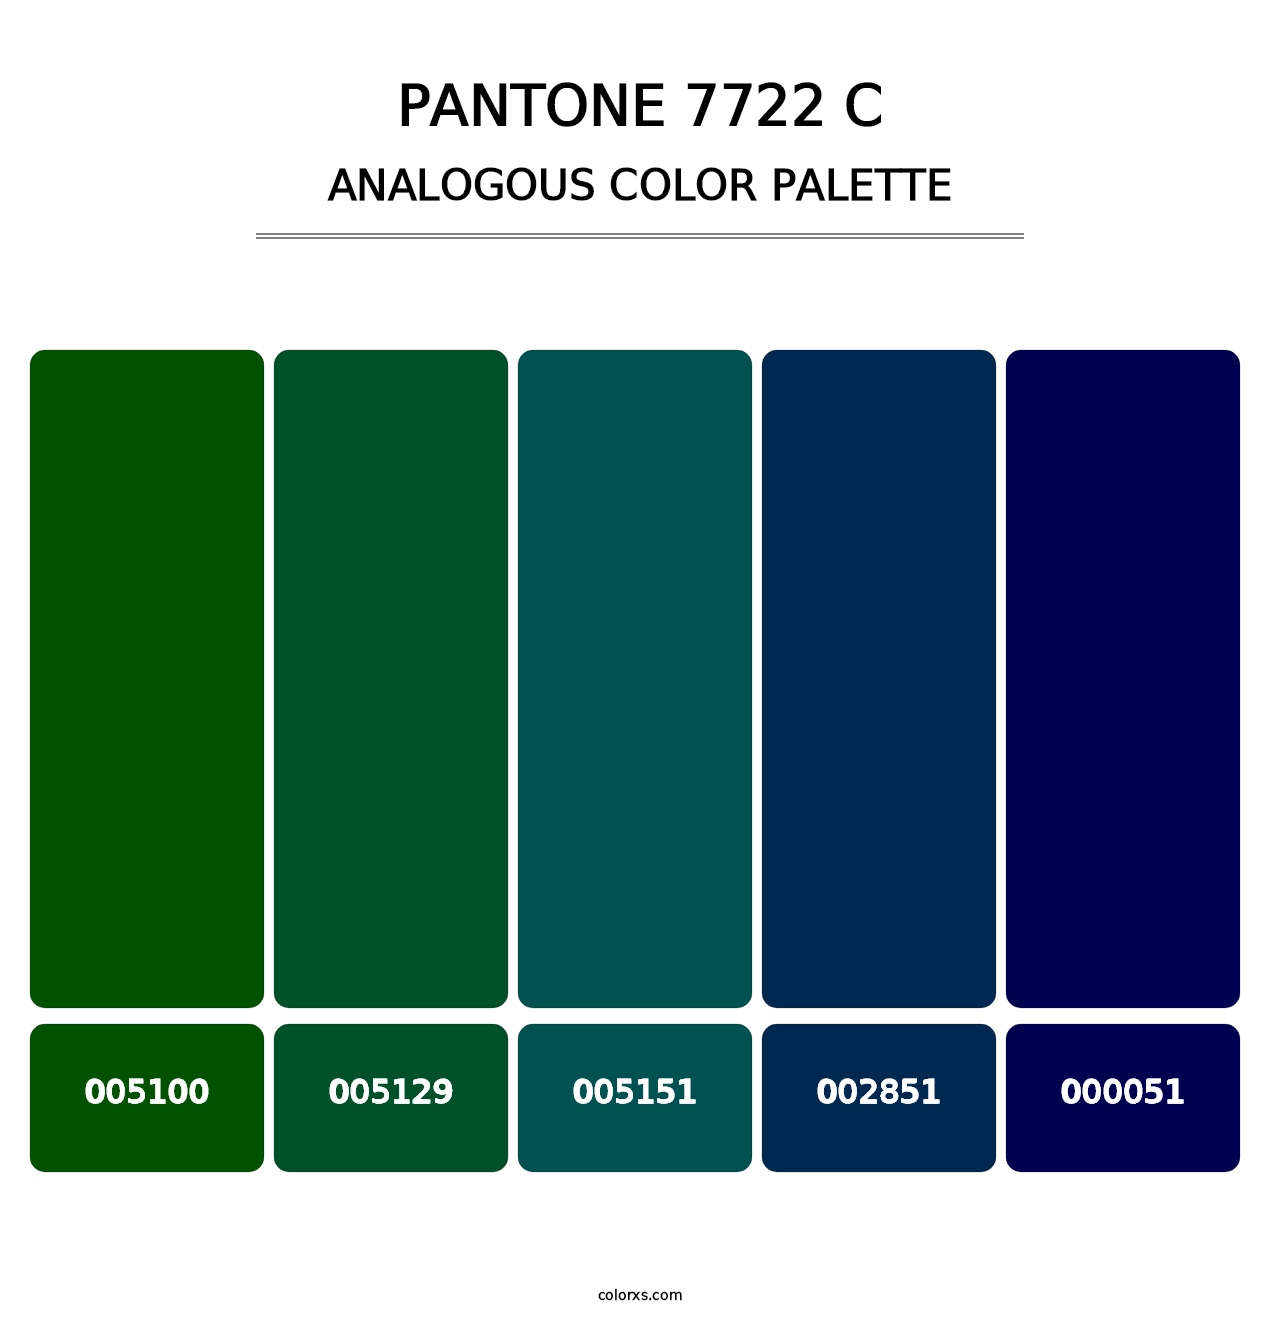 PANTONE 7722 C - Analogous Color Palette